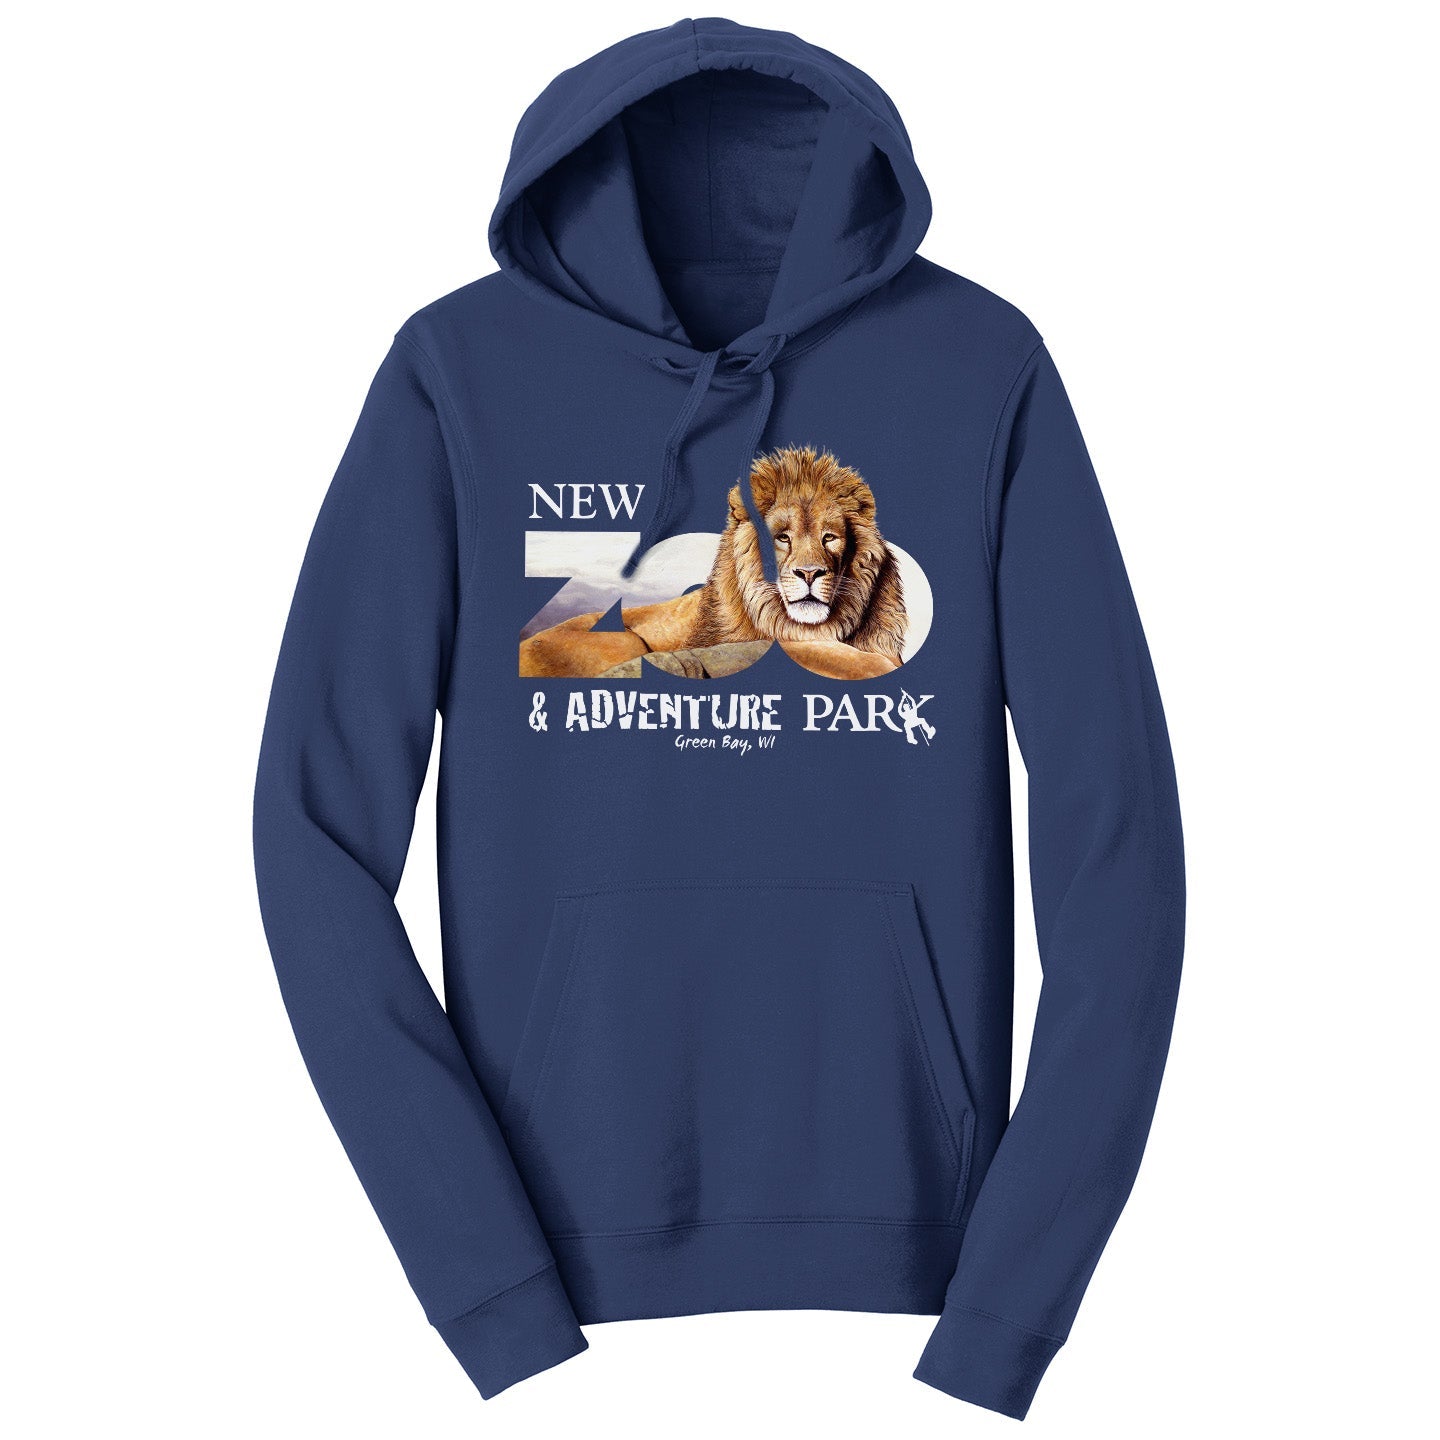 NEW Zoo Lion Logo - Adult Unisex Hoodie Sweatshirt